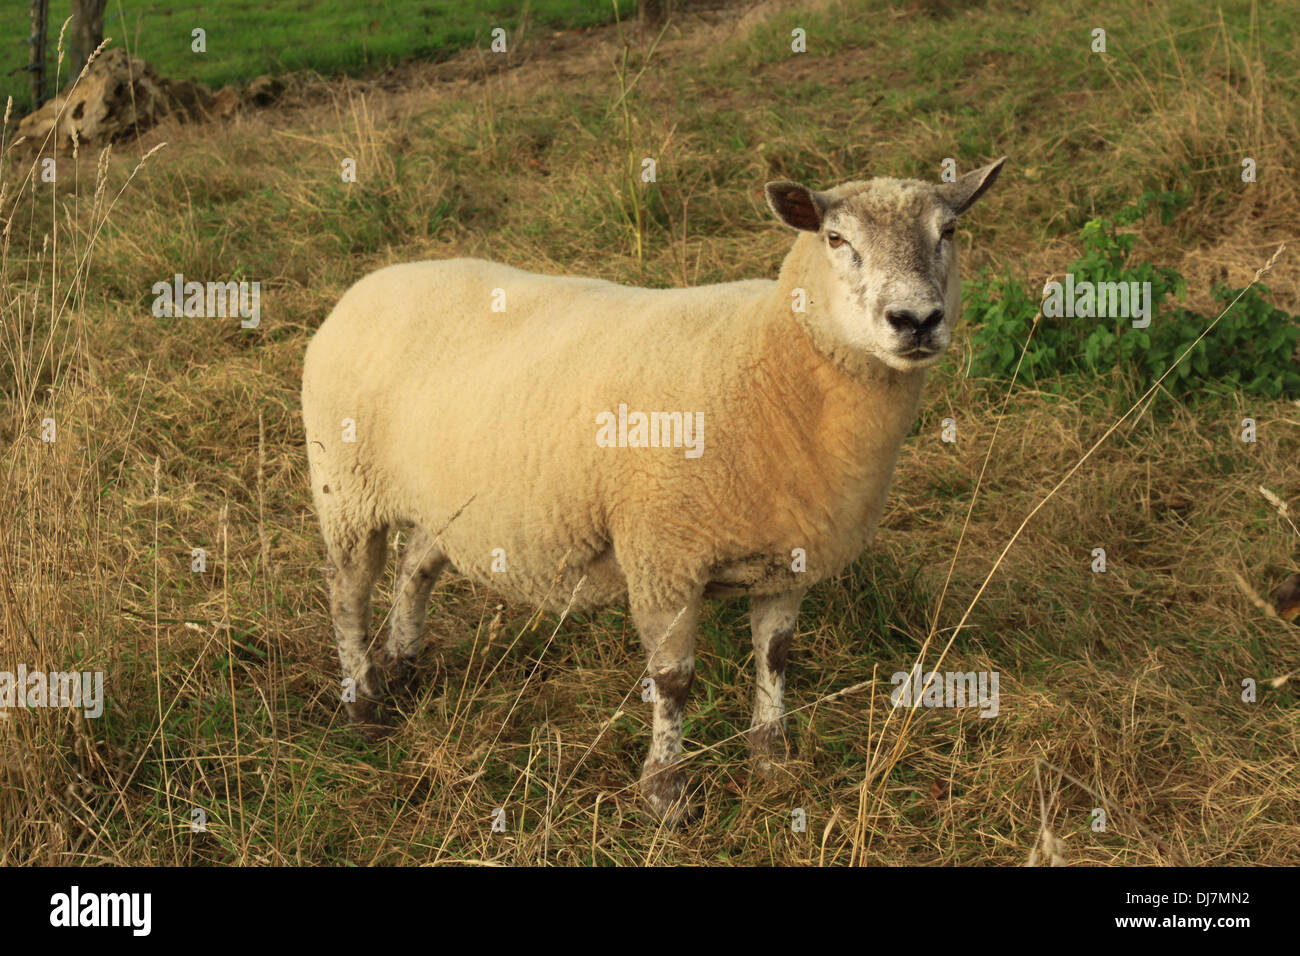 A French Ram Stock Photo - Alamy